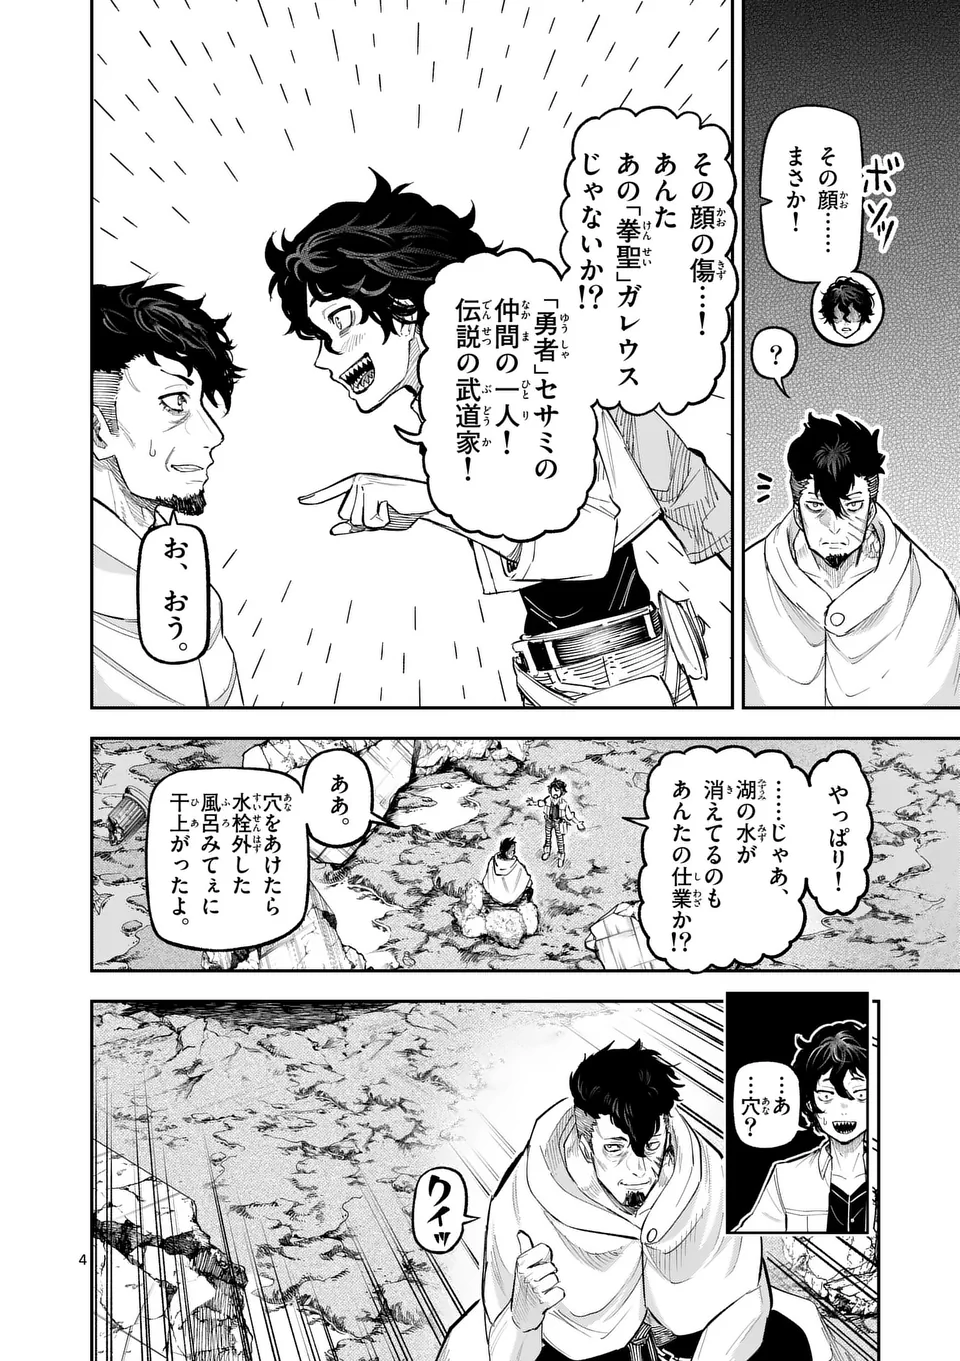 Juuou to Yakusou - Chapter 24 - Page 4